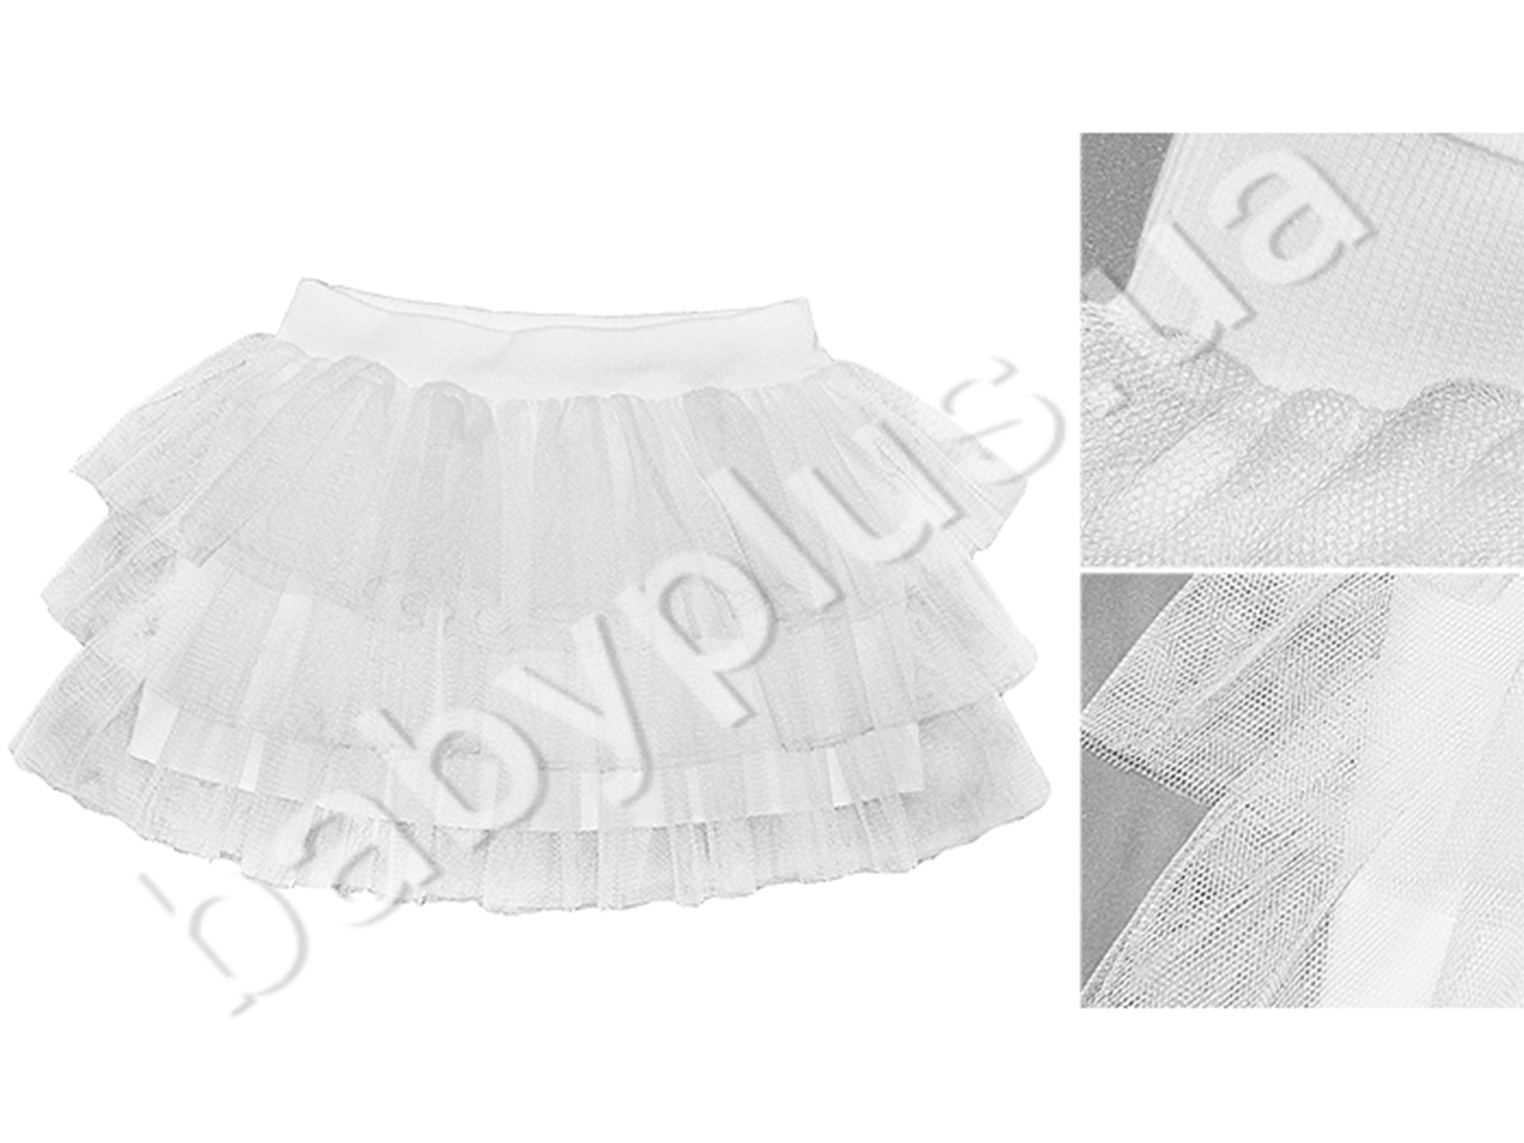 Пышная праздничная юбка Туту. Трикотаж+фатин (рост 86-92). ТМ Модные детки